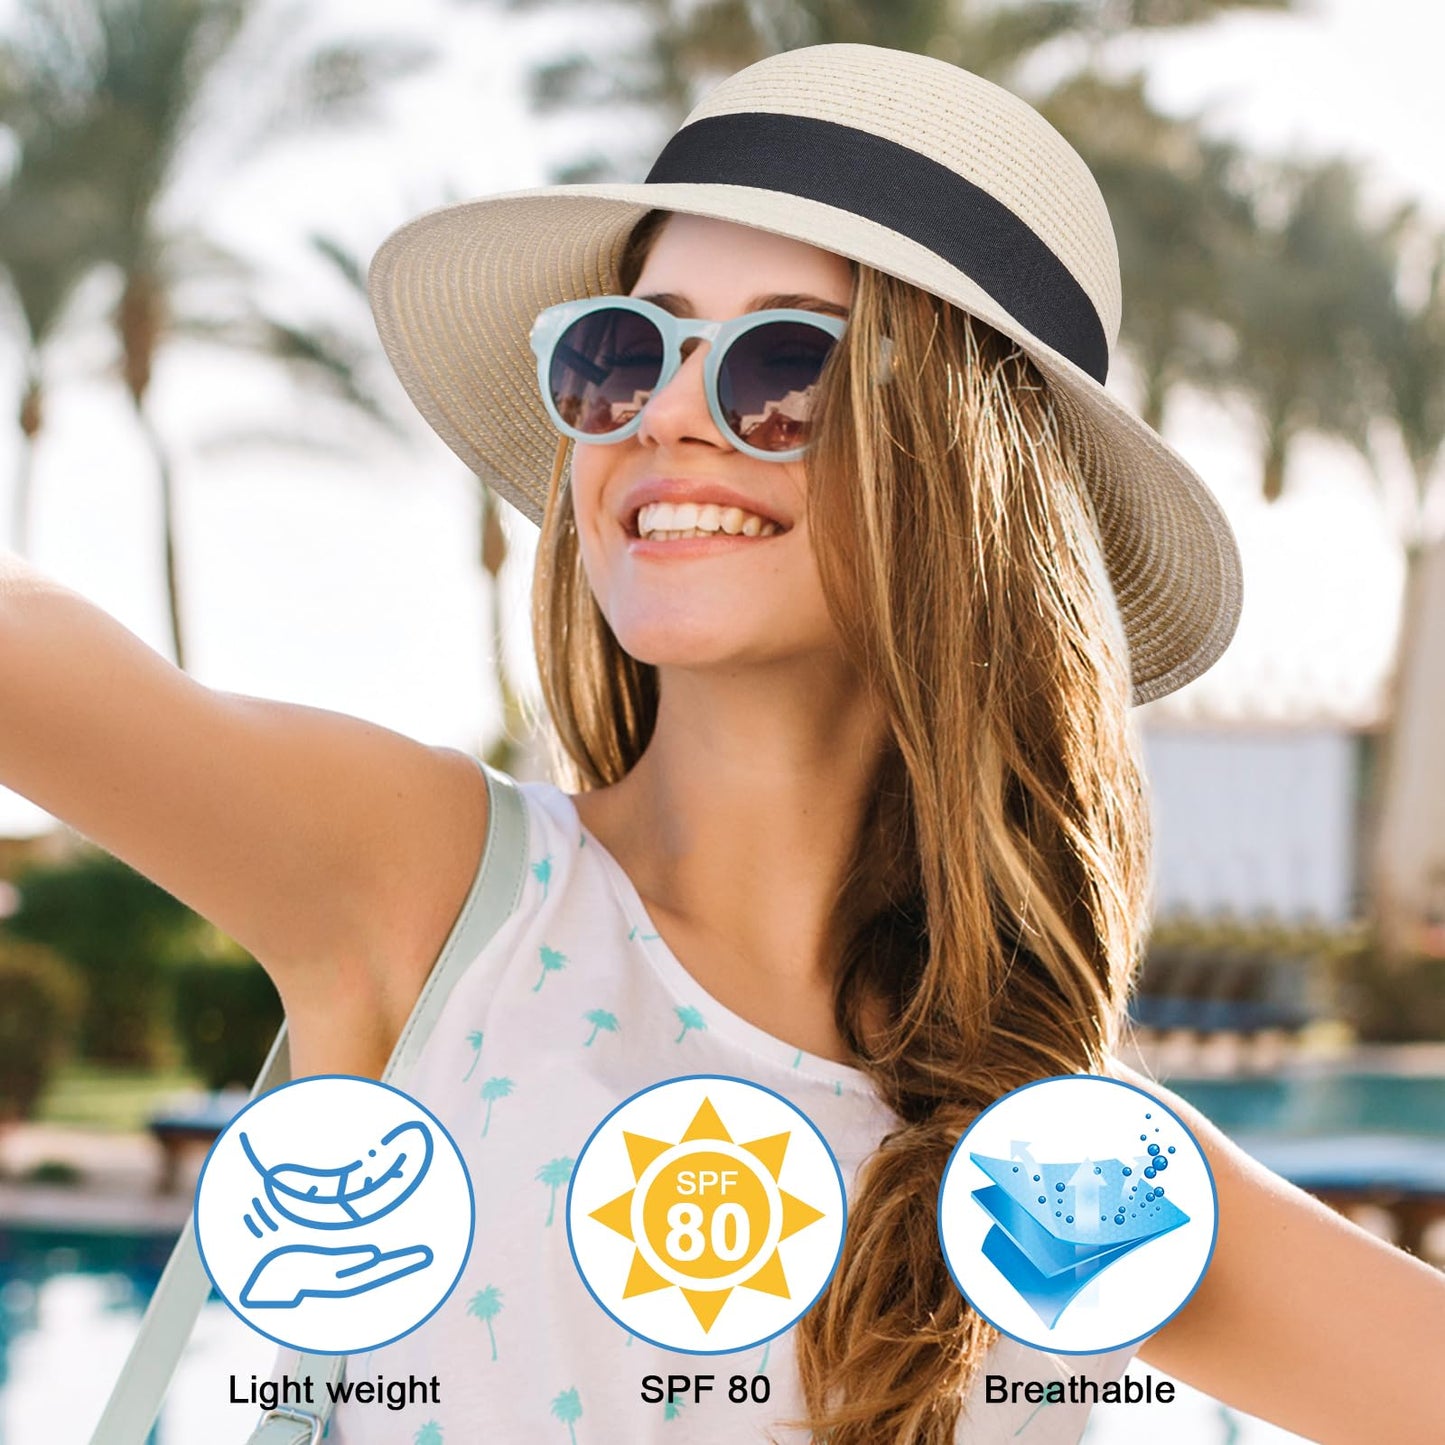 PRODUCTO 722-1 VIFUUR Sombreros de Paja para Mujer Visera de Verano de ala Ancha Sombrero para el Sol de Playa Plegable UPF UV Viaje Plegable Beige Puro L/XL